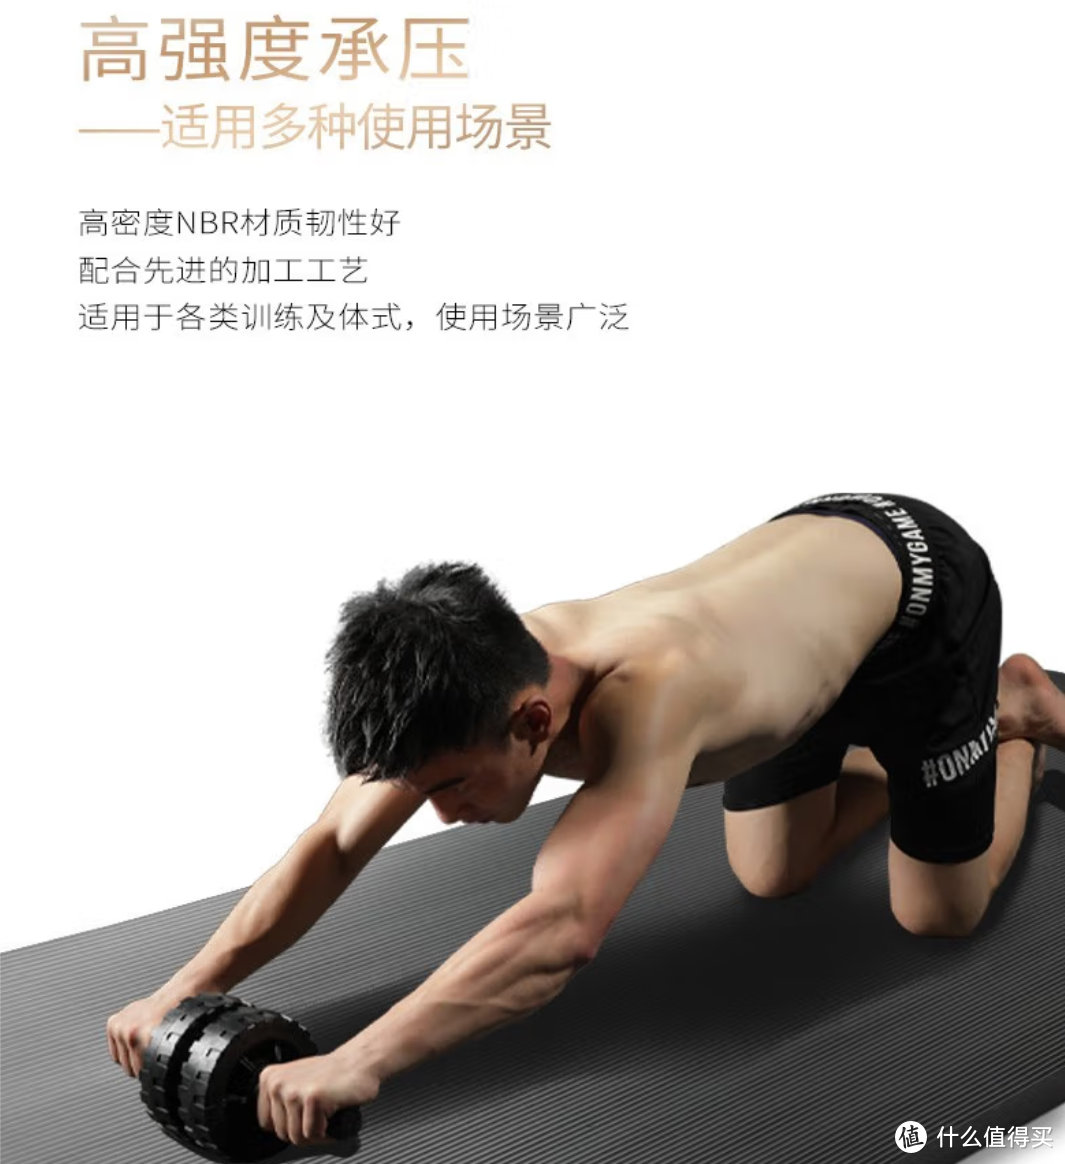 悦步健身垫—一款专为健身者设计的瑜伽垫